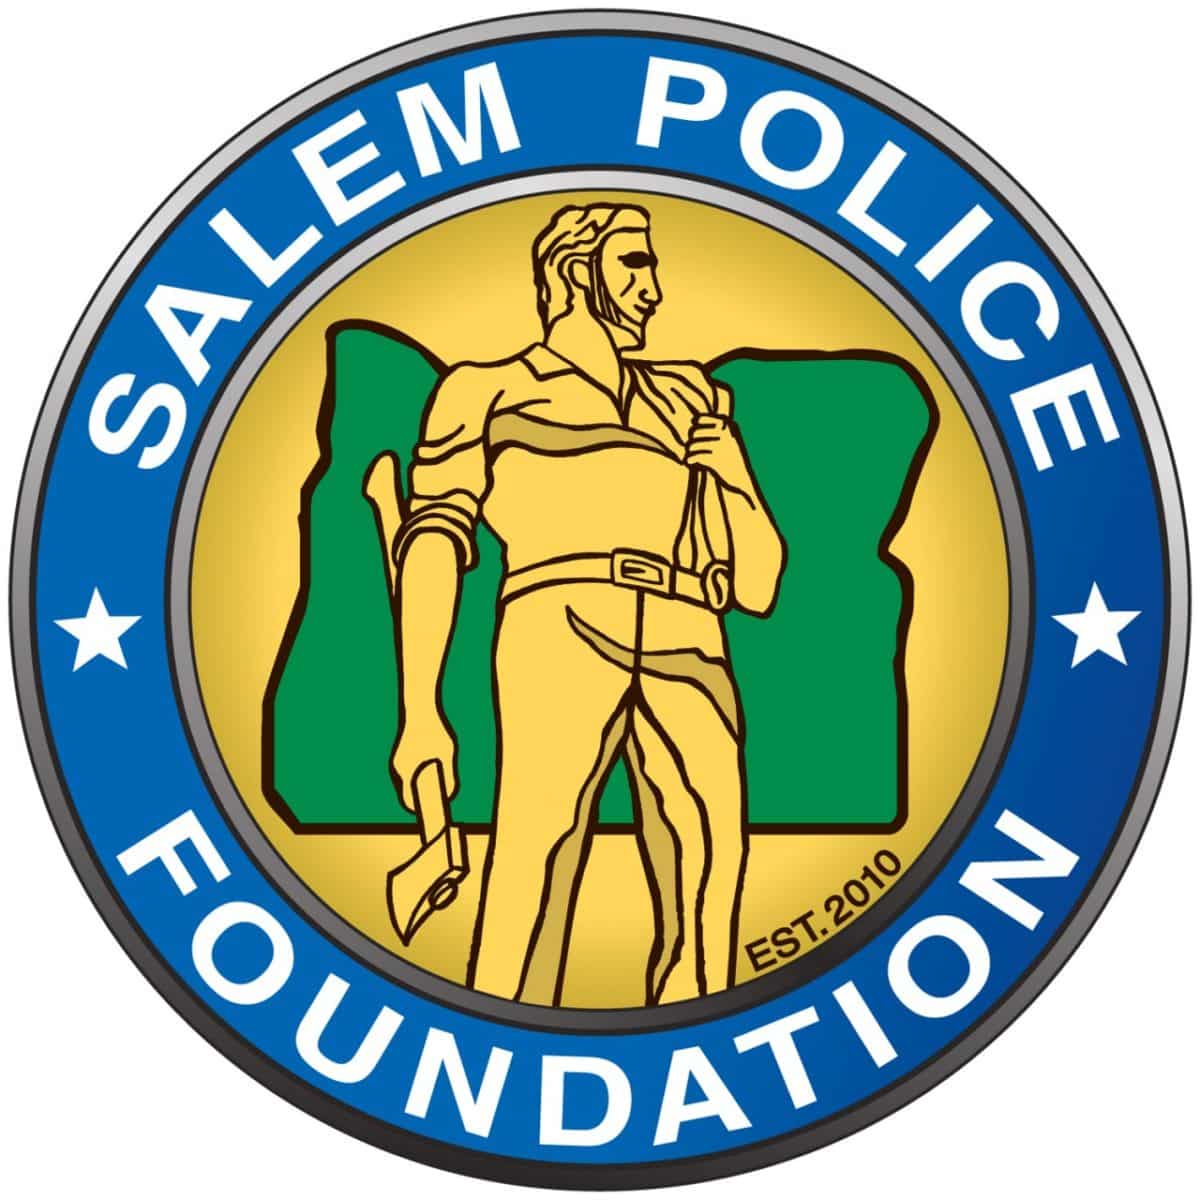 Wellert Joins Salem Police Foundation Board